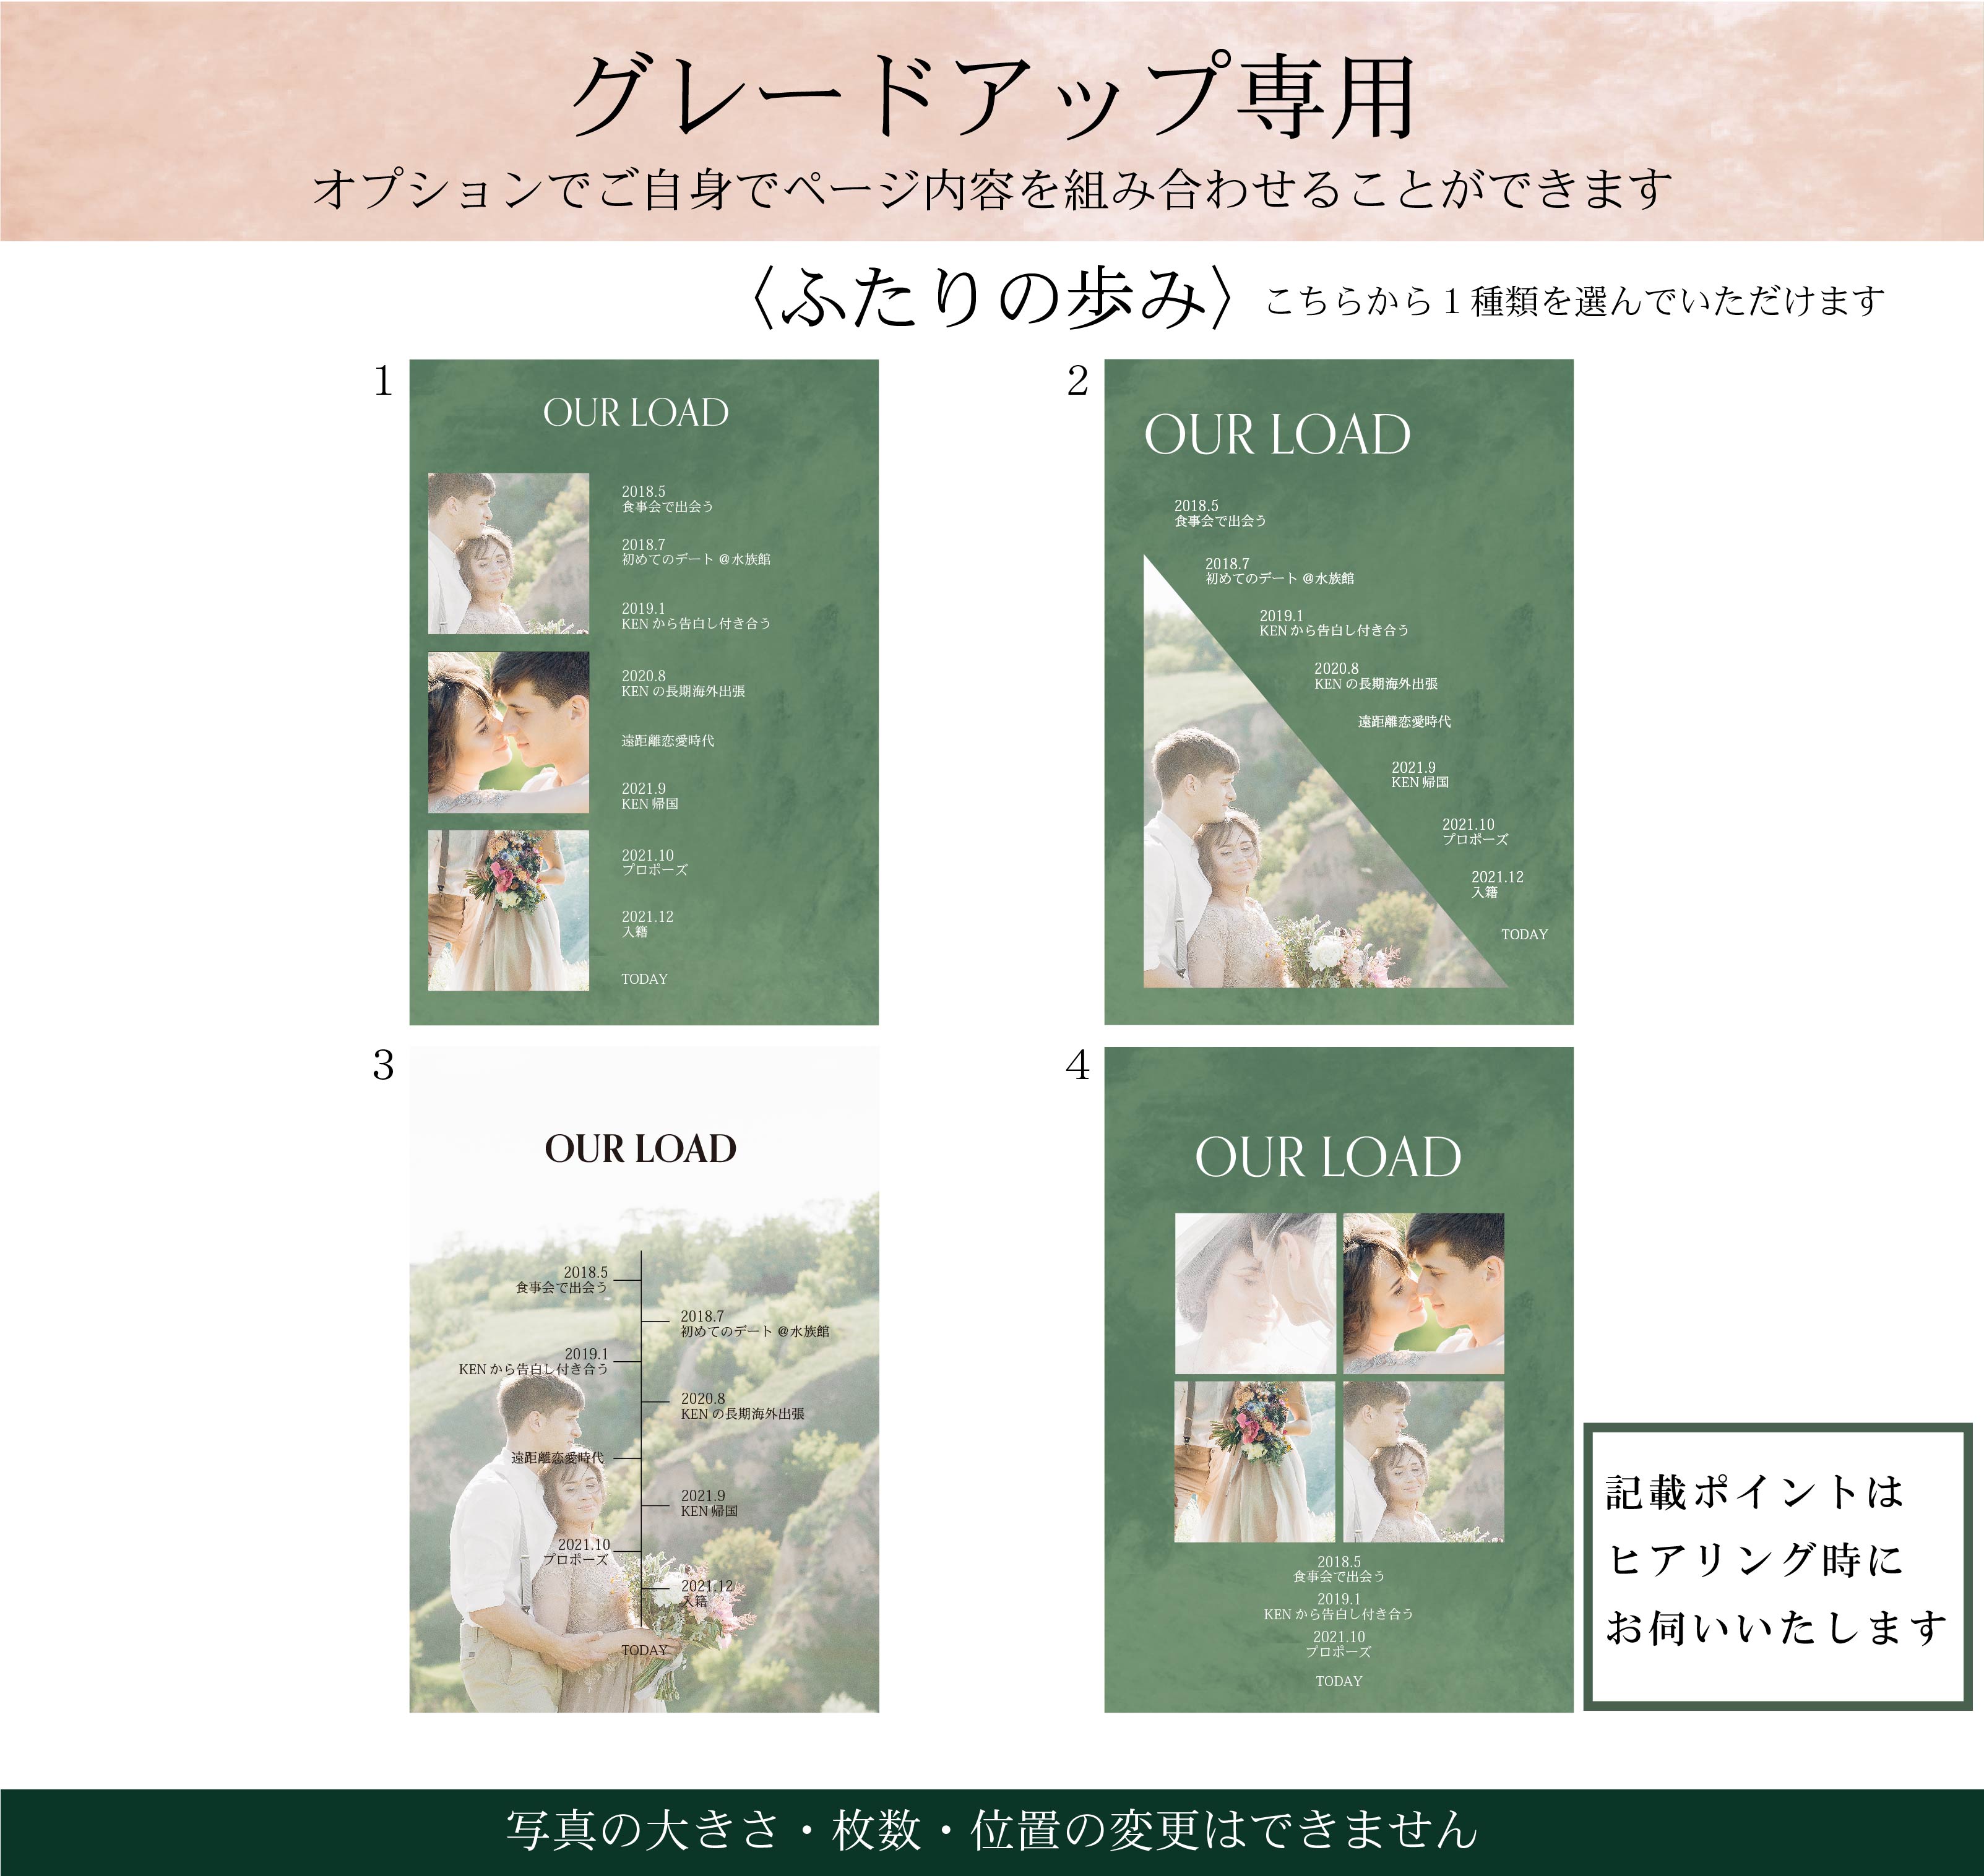 【プロフィールブック】BASIC PLAN - 03【結婚式　ペーパー　プロフィールブック】